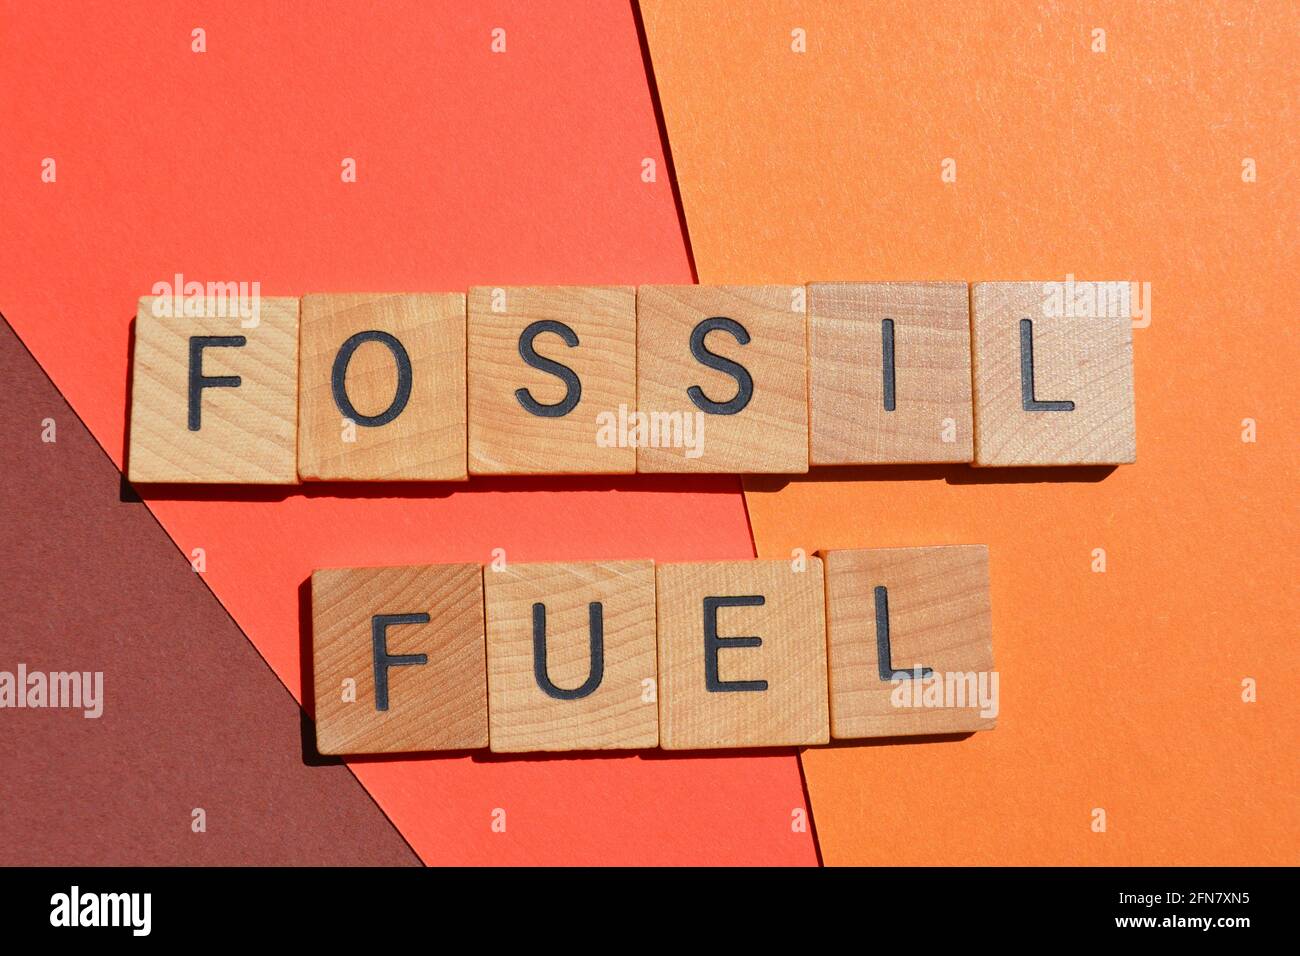 Combustible fossile, mots en lettres de l'alphabet en bois isolées sur fond rouge Banque D'Images